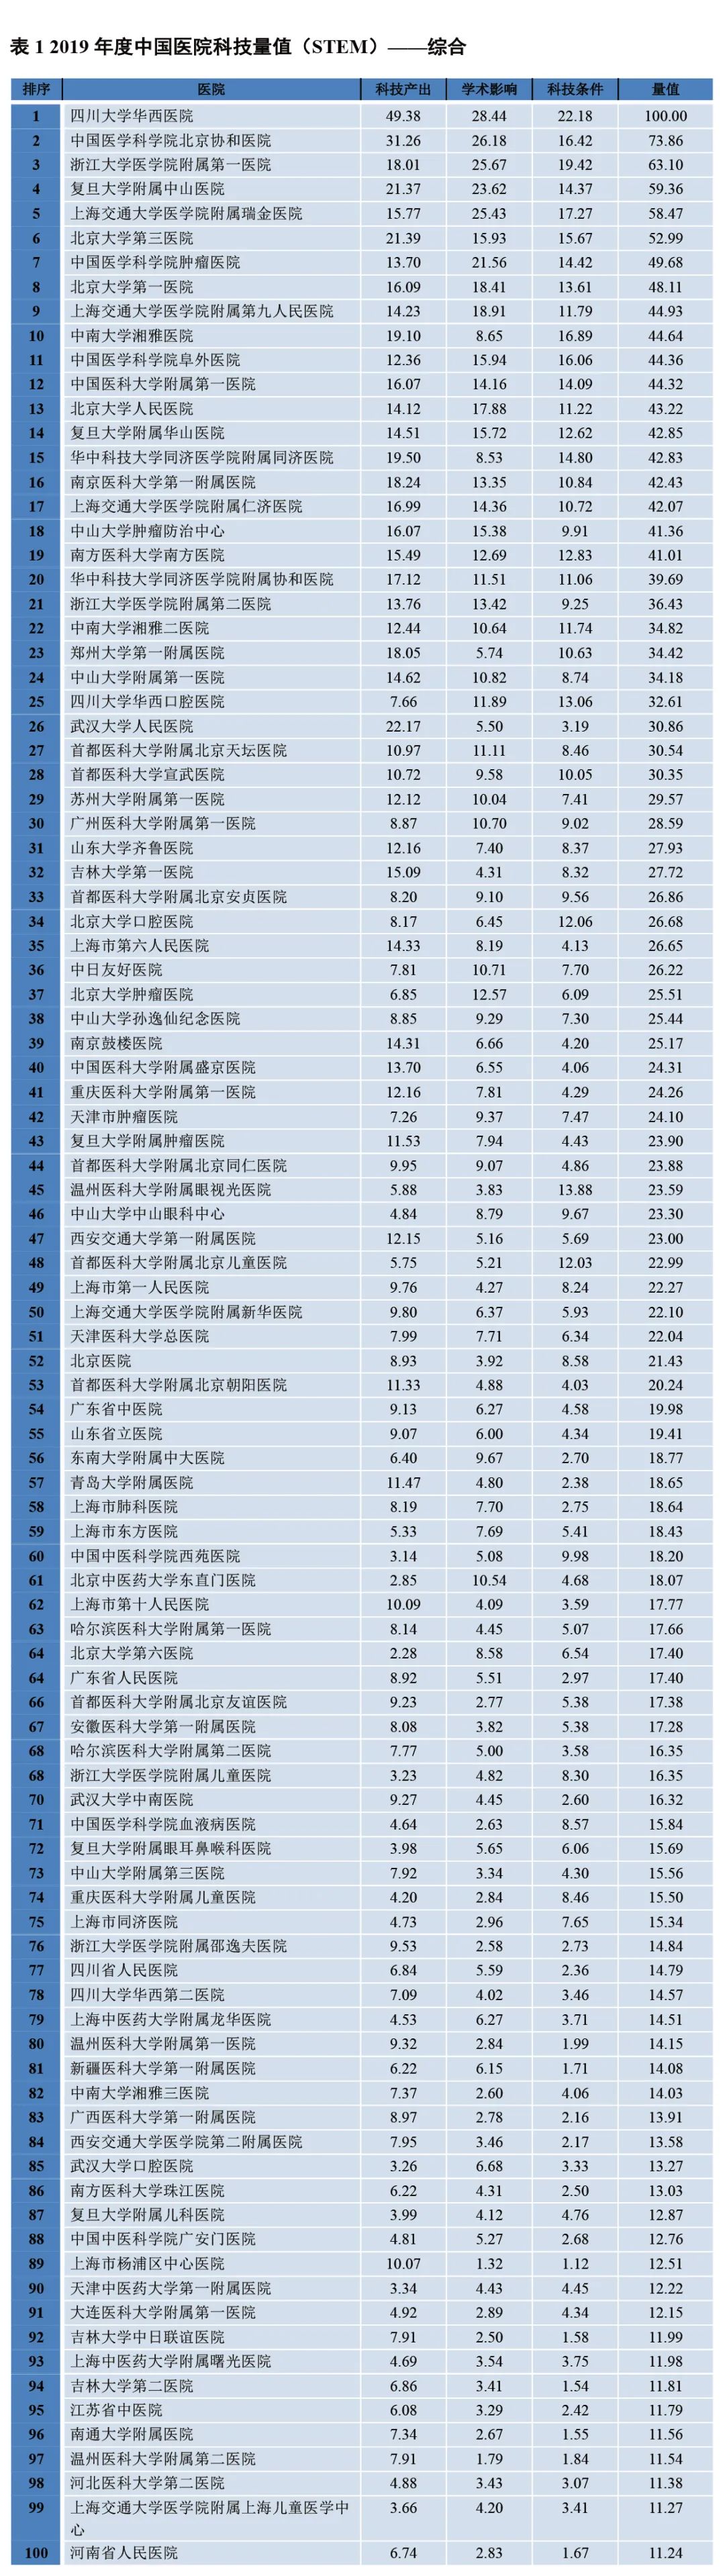 2019年度中国医院<font color="red">科技</font><font color="red">量值</font>(STEM)发布，华西，协和，浙一位居三甲(附完整名单)